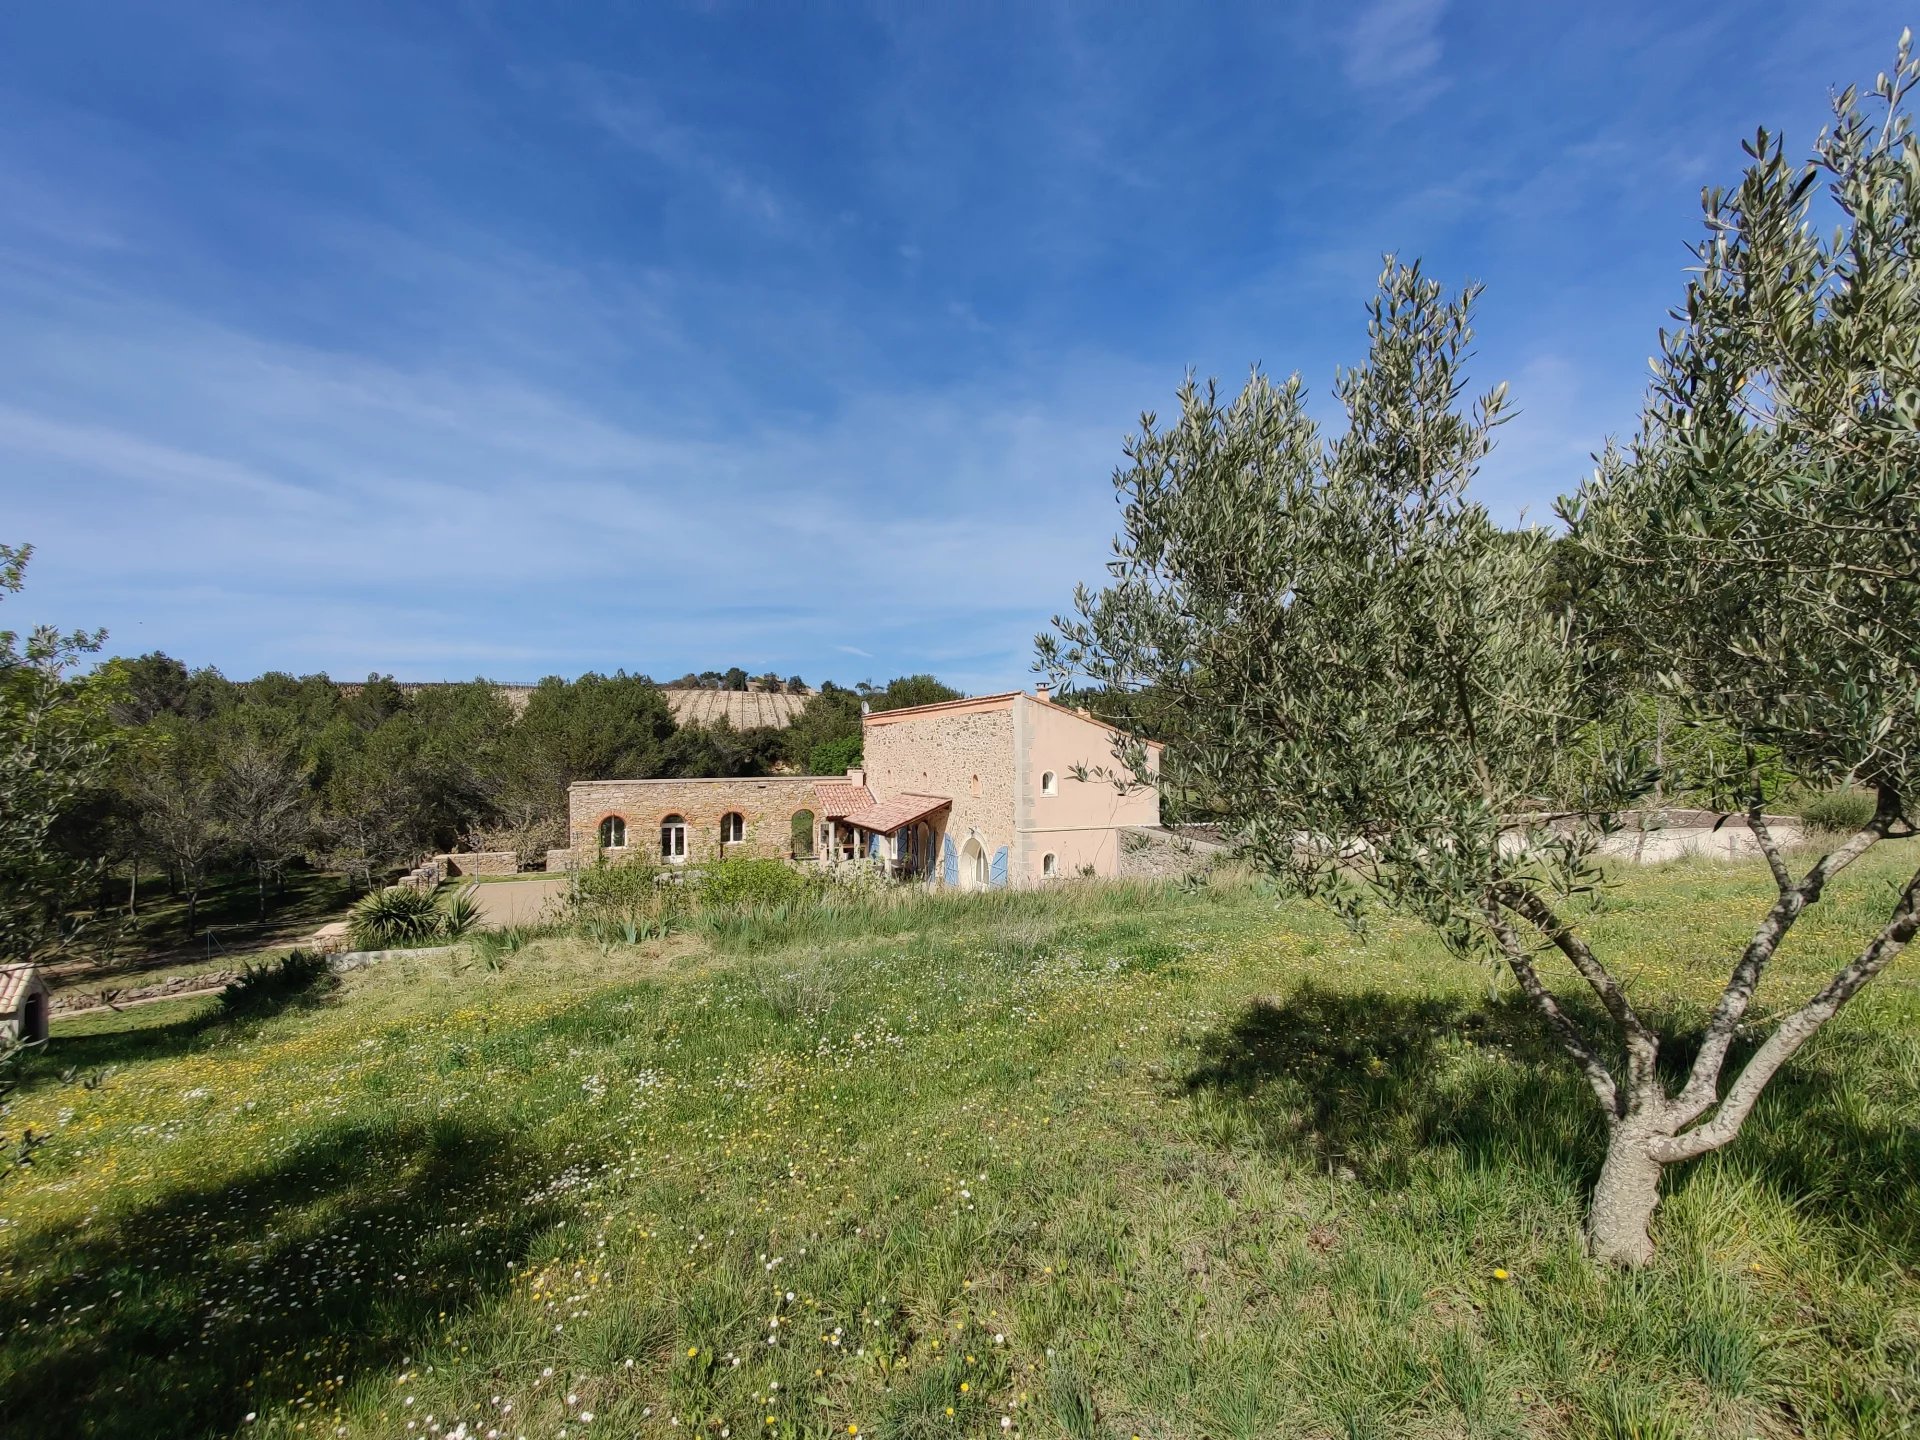 Villa historique rénovée entourée d'oliviers et de vignes à moins d'une heure de la mer Méditerranée